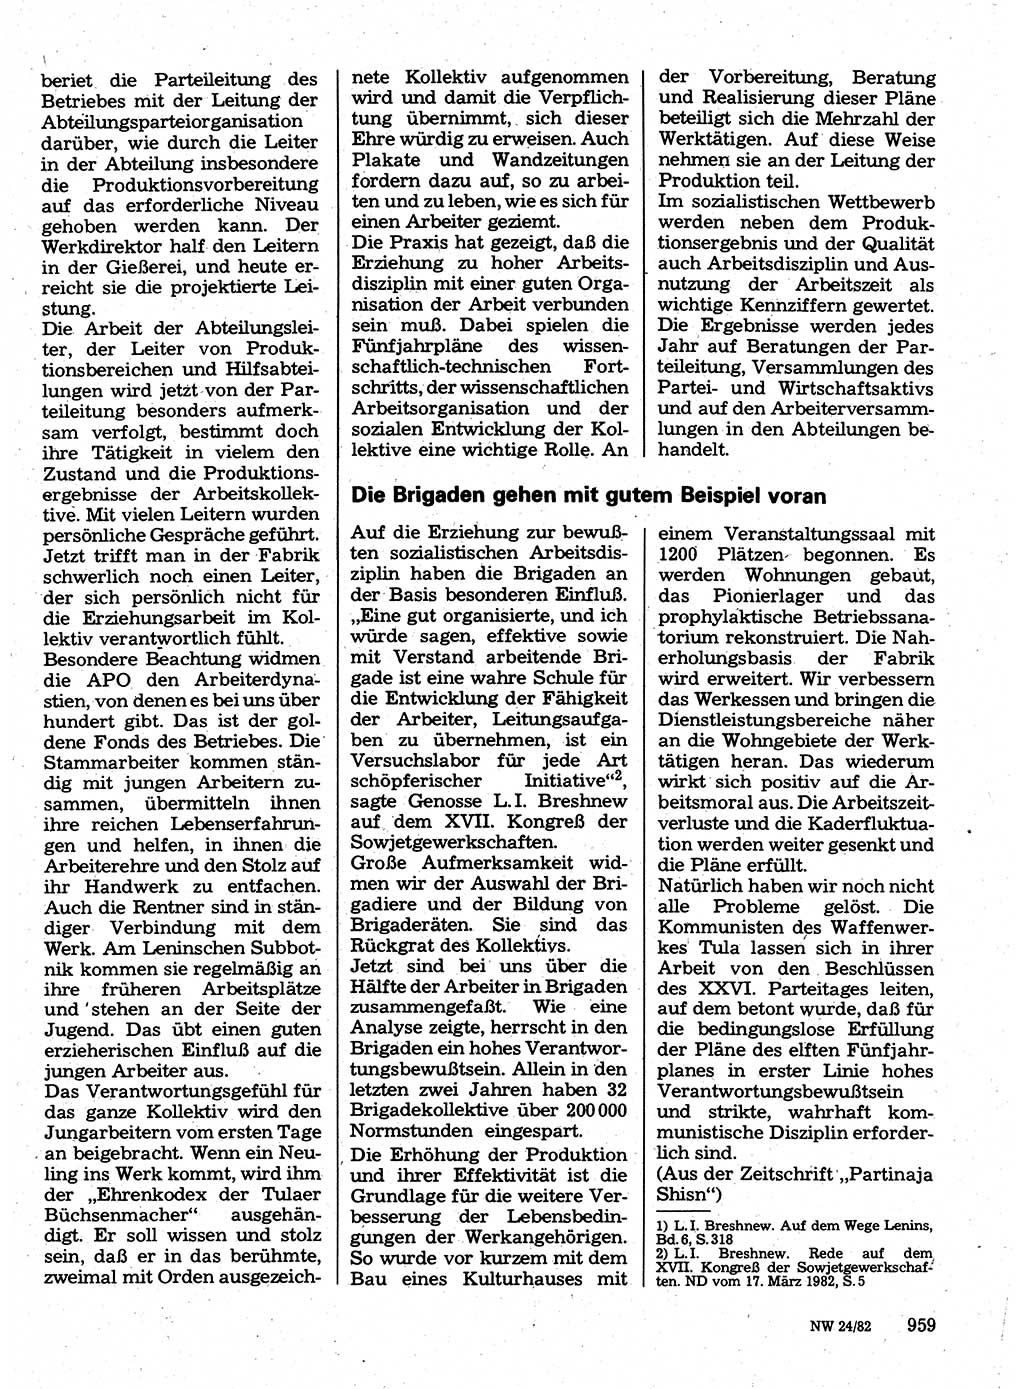 Neuer Weg (NW), Organ des Zentralkomitees (ZK) der SED (Sozialistische Einheitspartei Deutschlands) für Fragen des Parteilebens, 37. Jahrgang [Deutsche Demokratische Republik (DDR)] 1982, Seite 959 (NW ZK SED DDR 1982, S. 959)